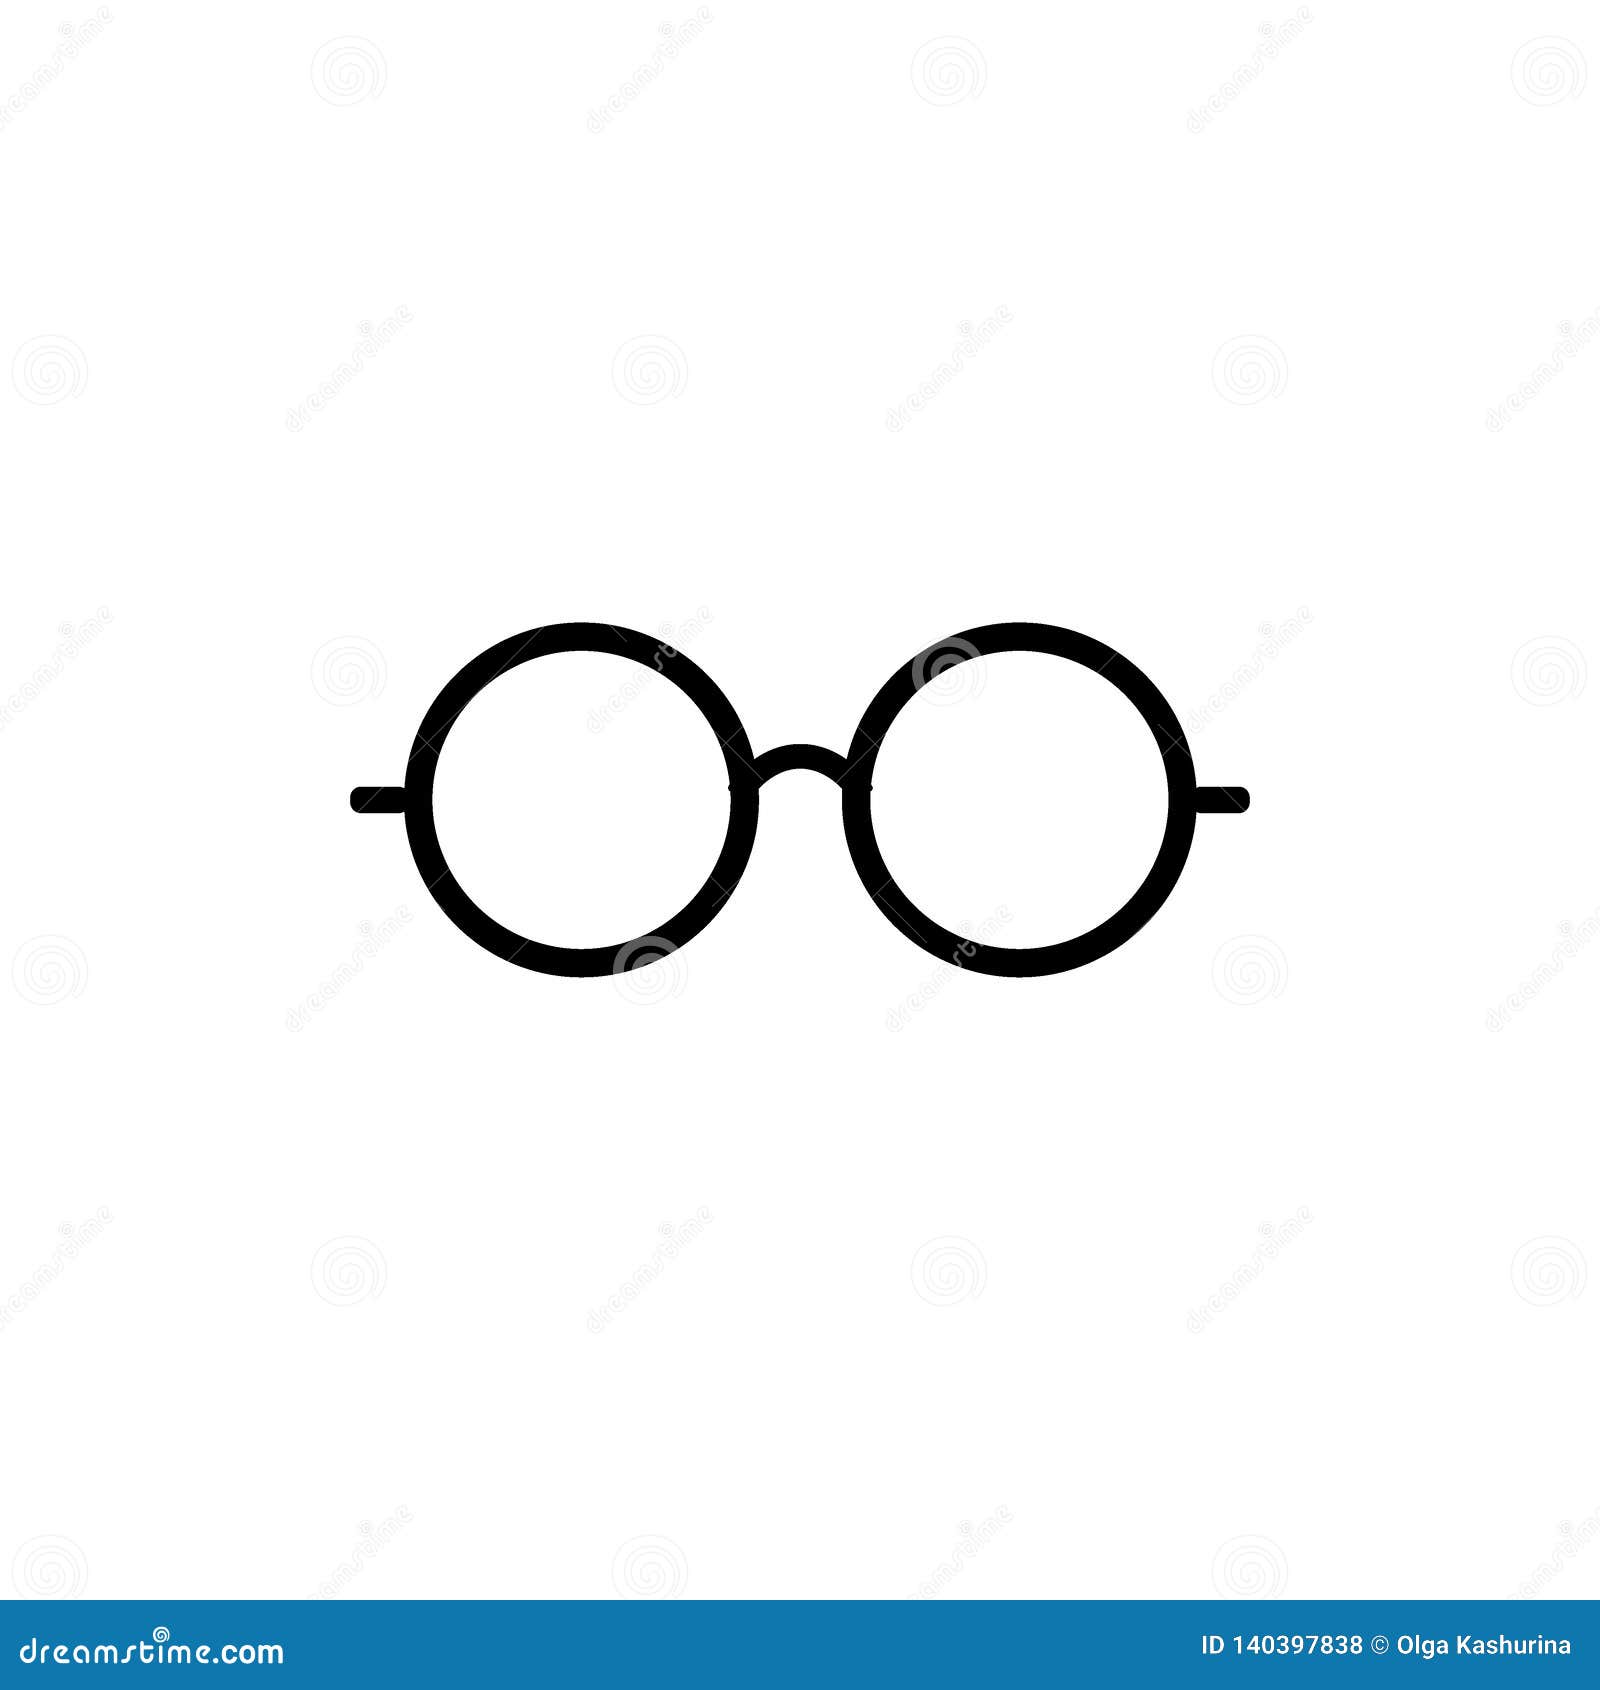 eyeglasses icon. glasses icon. round glasses icon  set - 